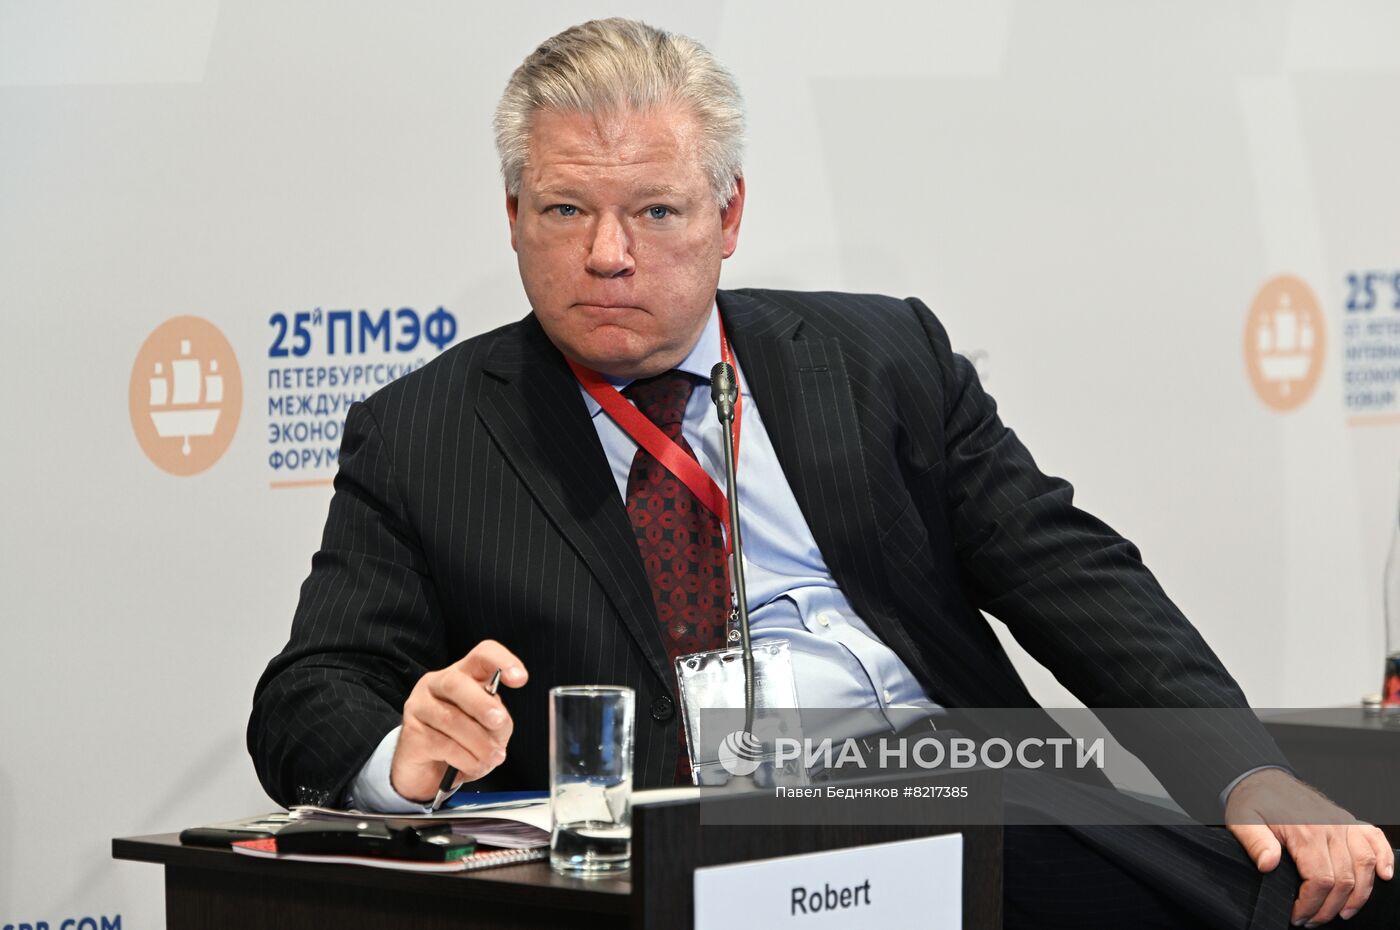 ПМЭФ-2022. Сессия. Западные инвесторы в России: новые реалии 